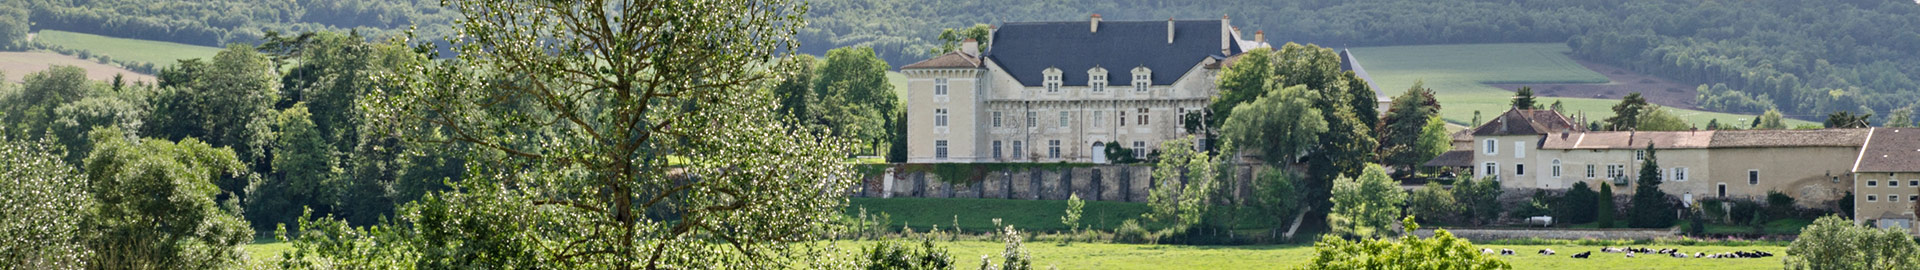 Le Château de Montbras, un château Renaissance